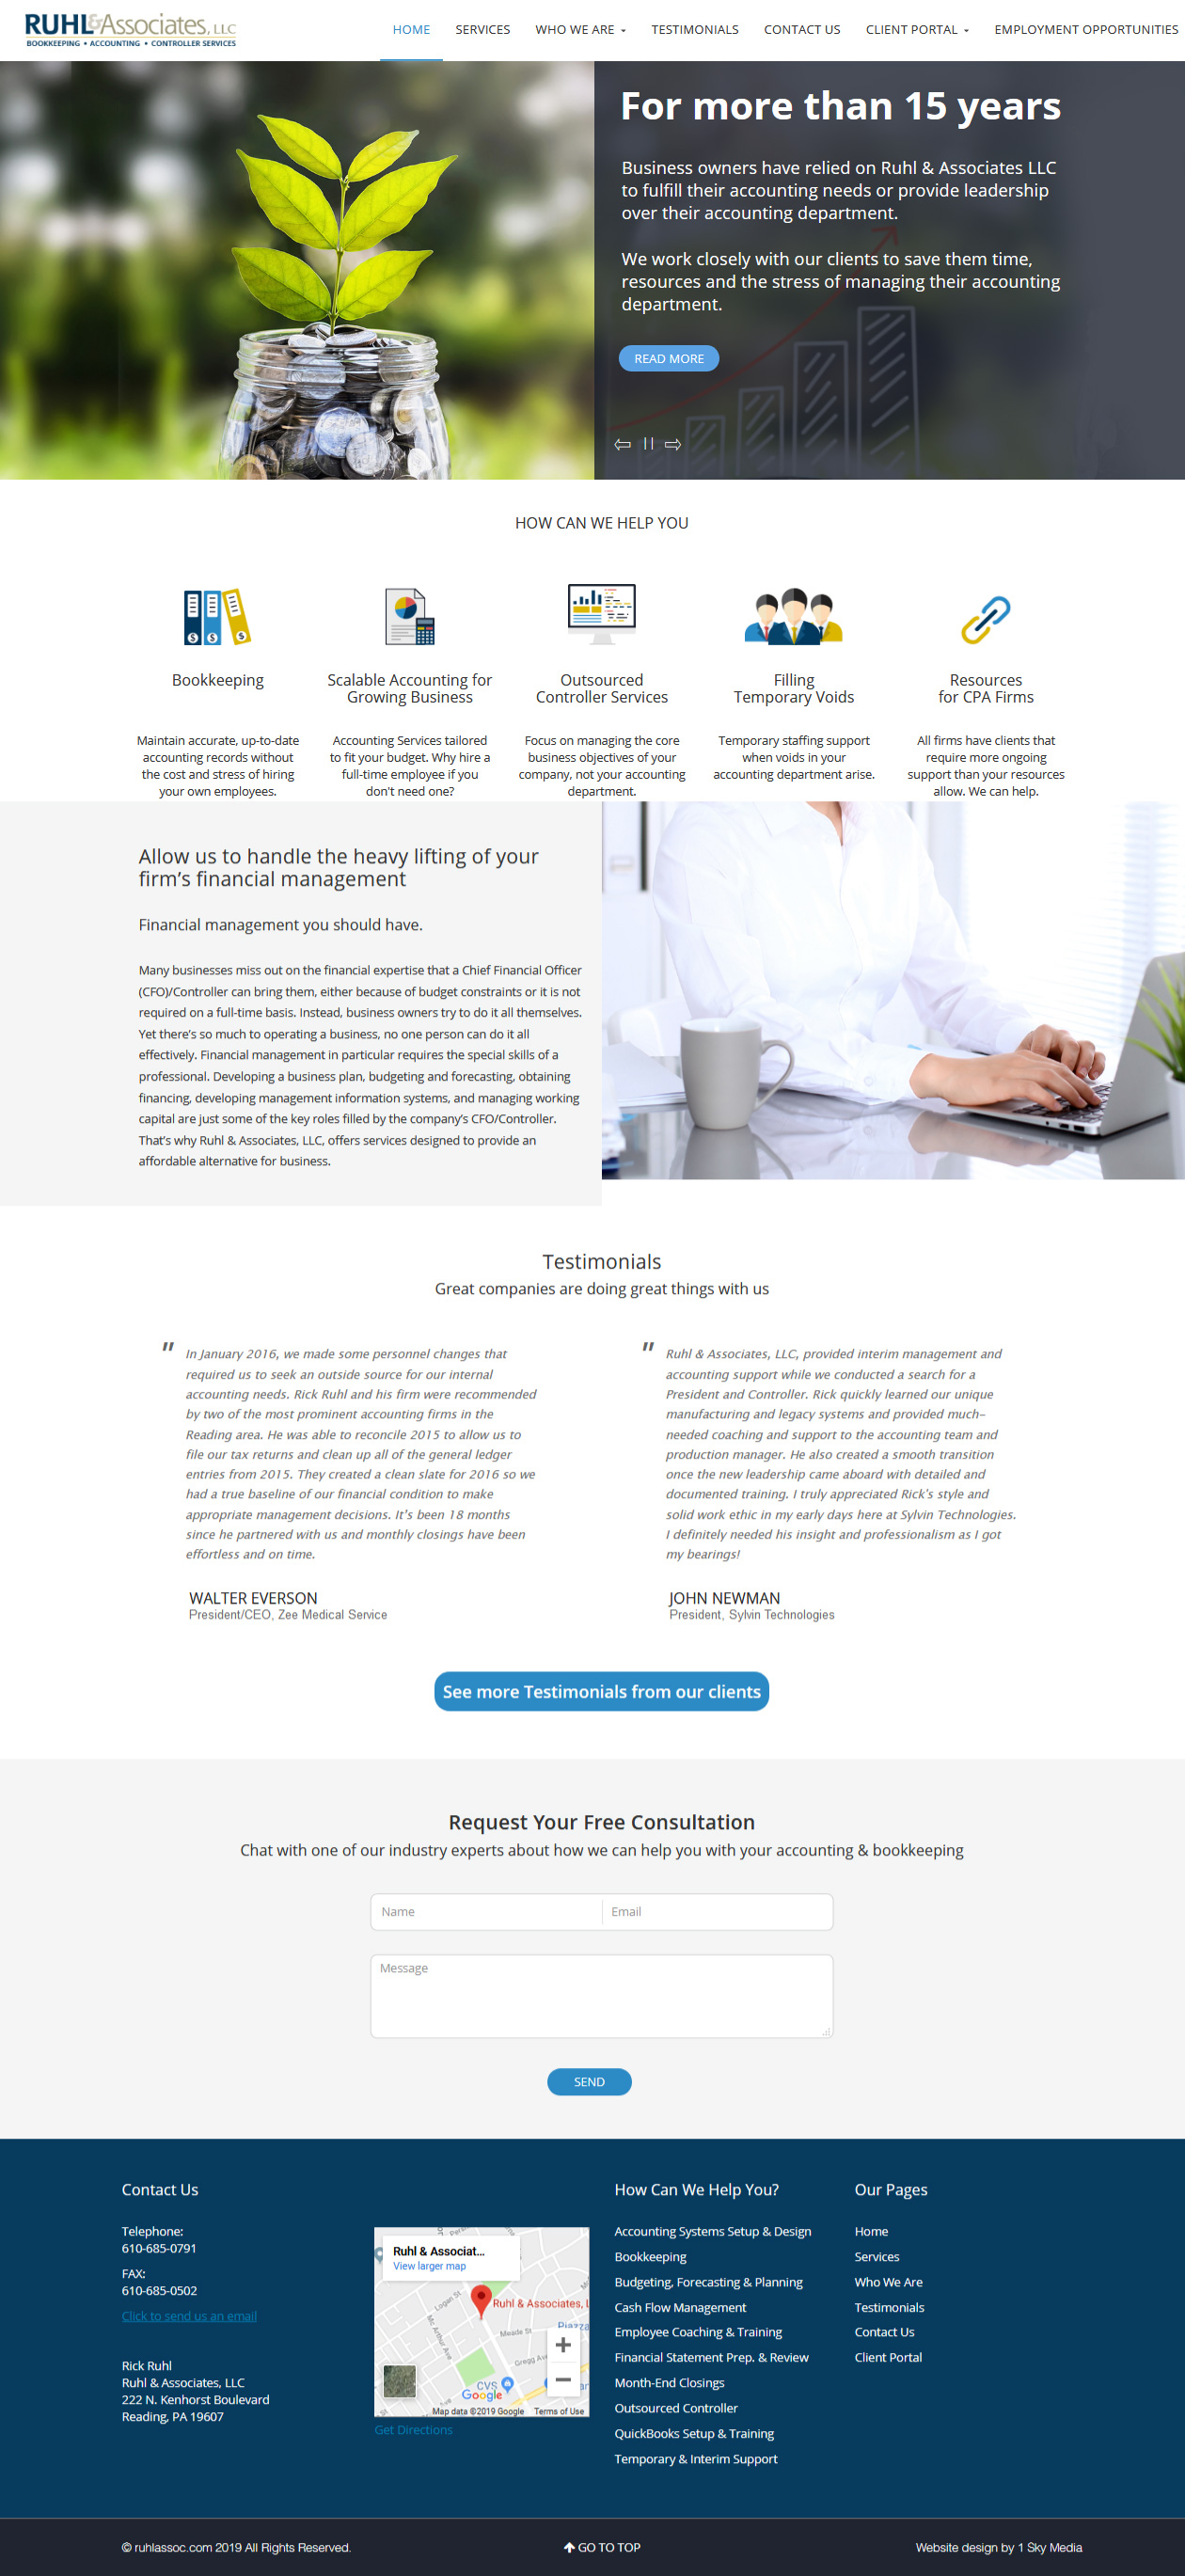 RUHL & Associates Accountants website design